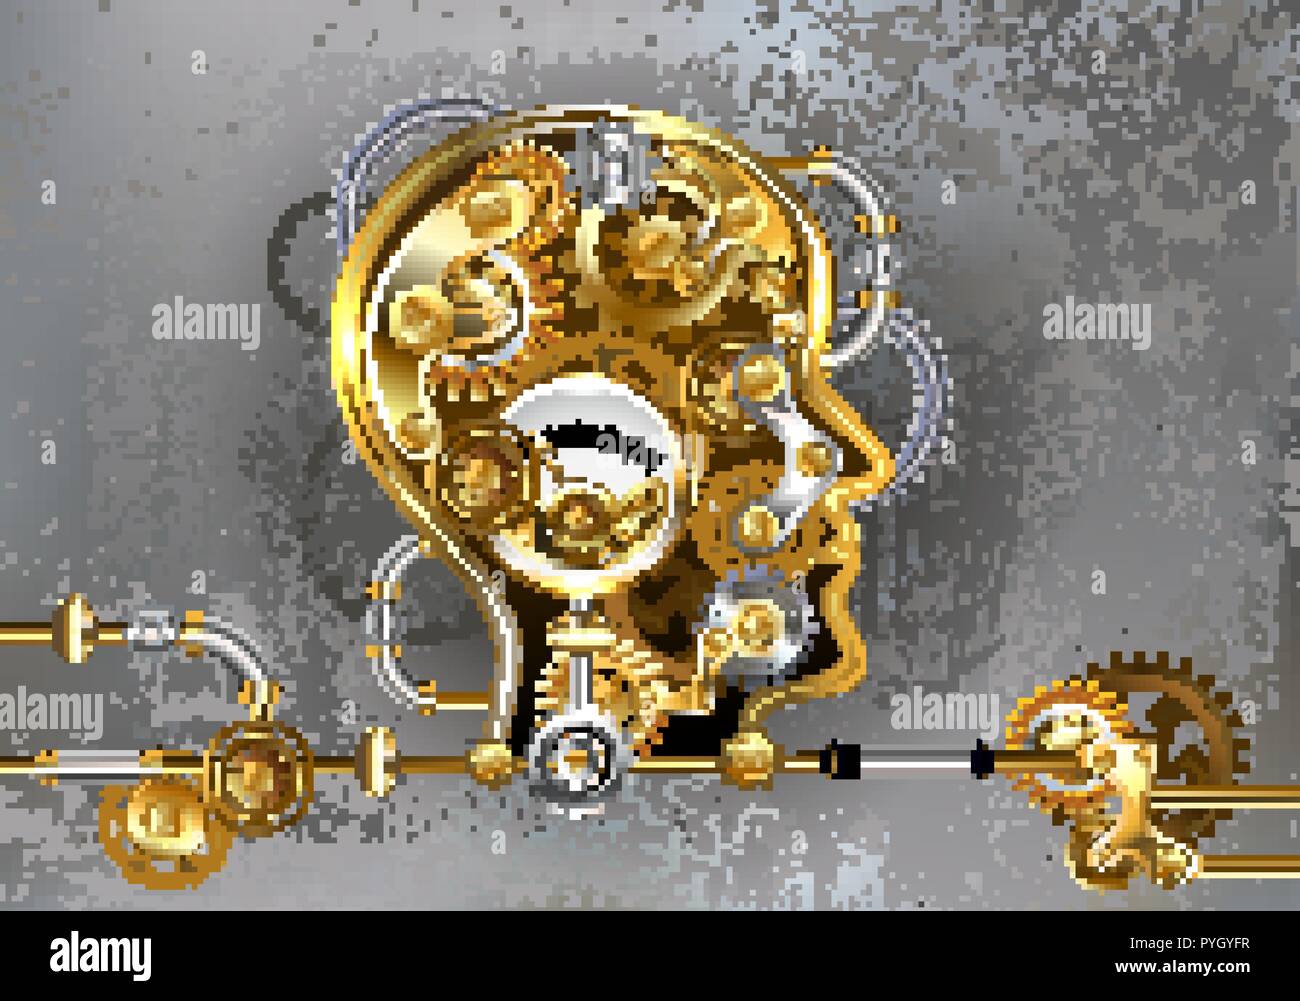 Konzeptionelle, Mechanik, menschlichen Kopf mit antiken Manometer und Metal Gears gegen Grau industriellen Hintergrund. Steampunk Stil. Stock Vektor